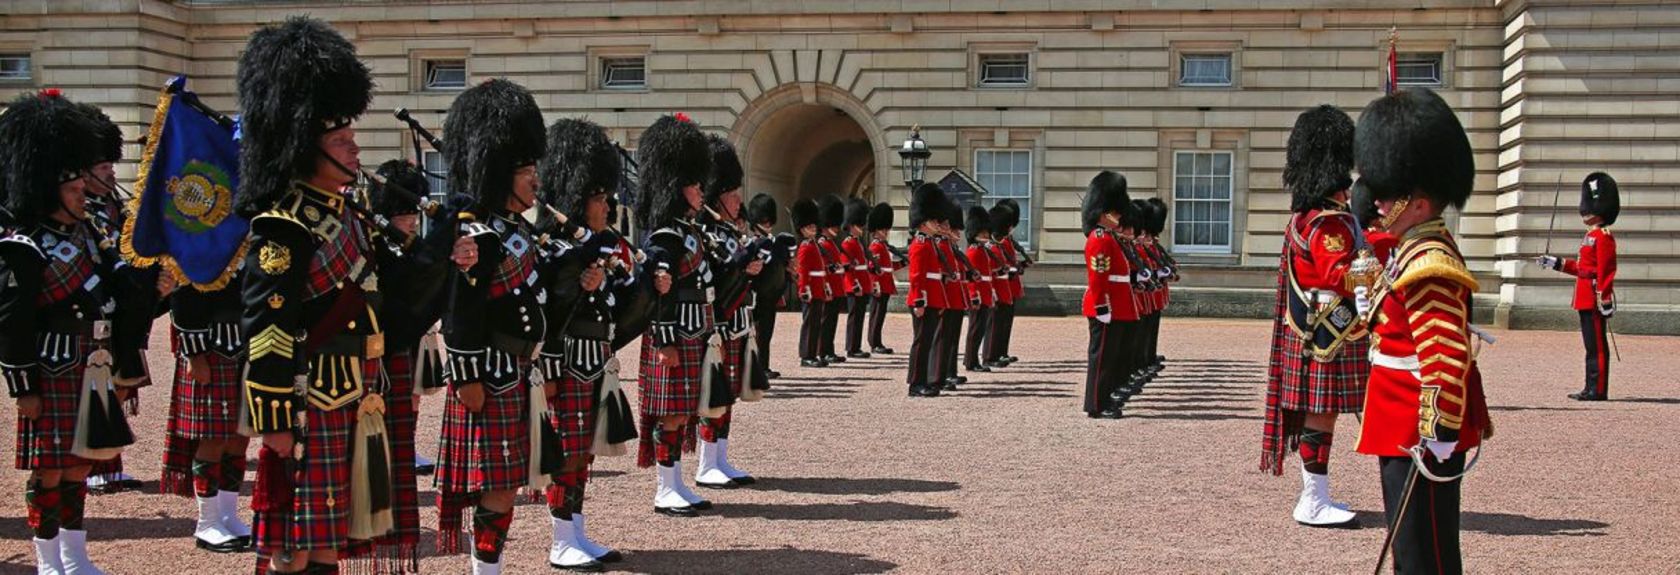 Durante todo o ano, a Queen’s Guard no Buckingham Palace é aliviada às 11:00 horas às segundas, quartas, sextas e domingos durante a 